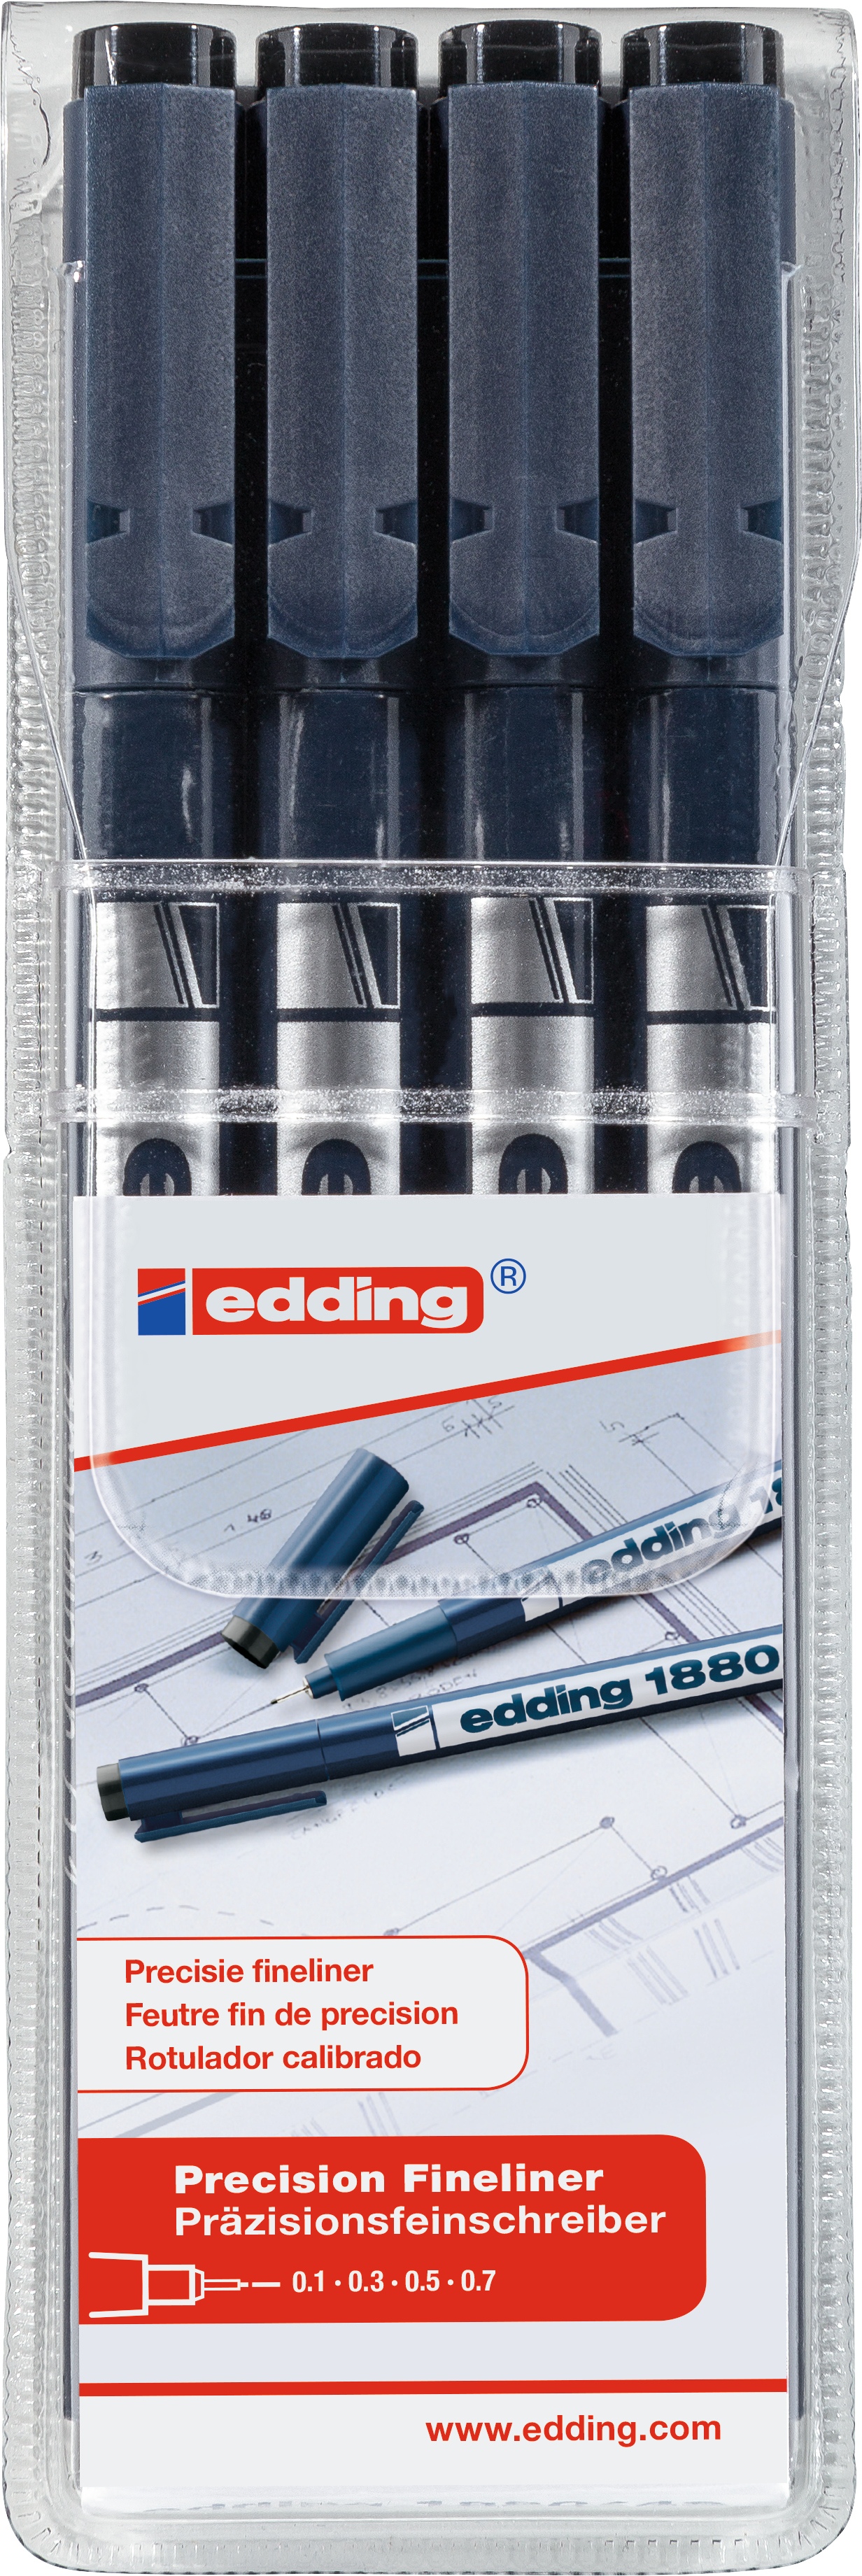 EDDING Finleliner 1880 0.1-0.7mm 338 4 pcs. 4 pcs.